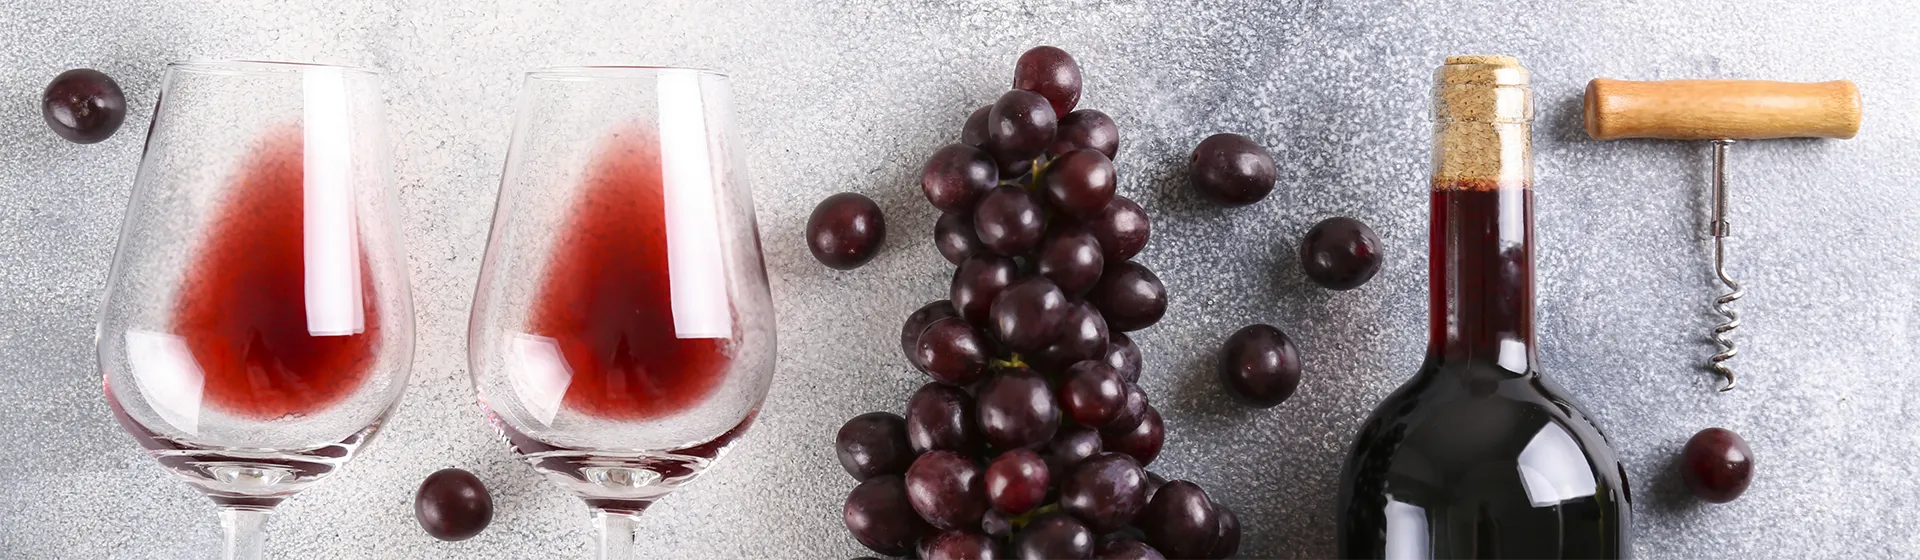 wino i kieliszki